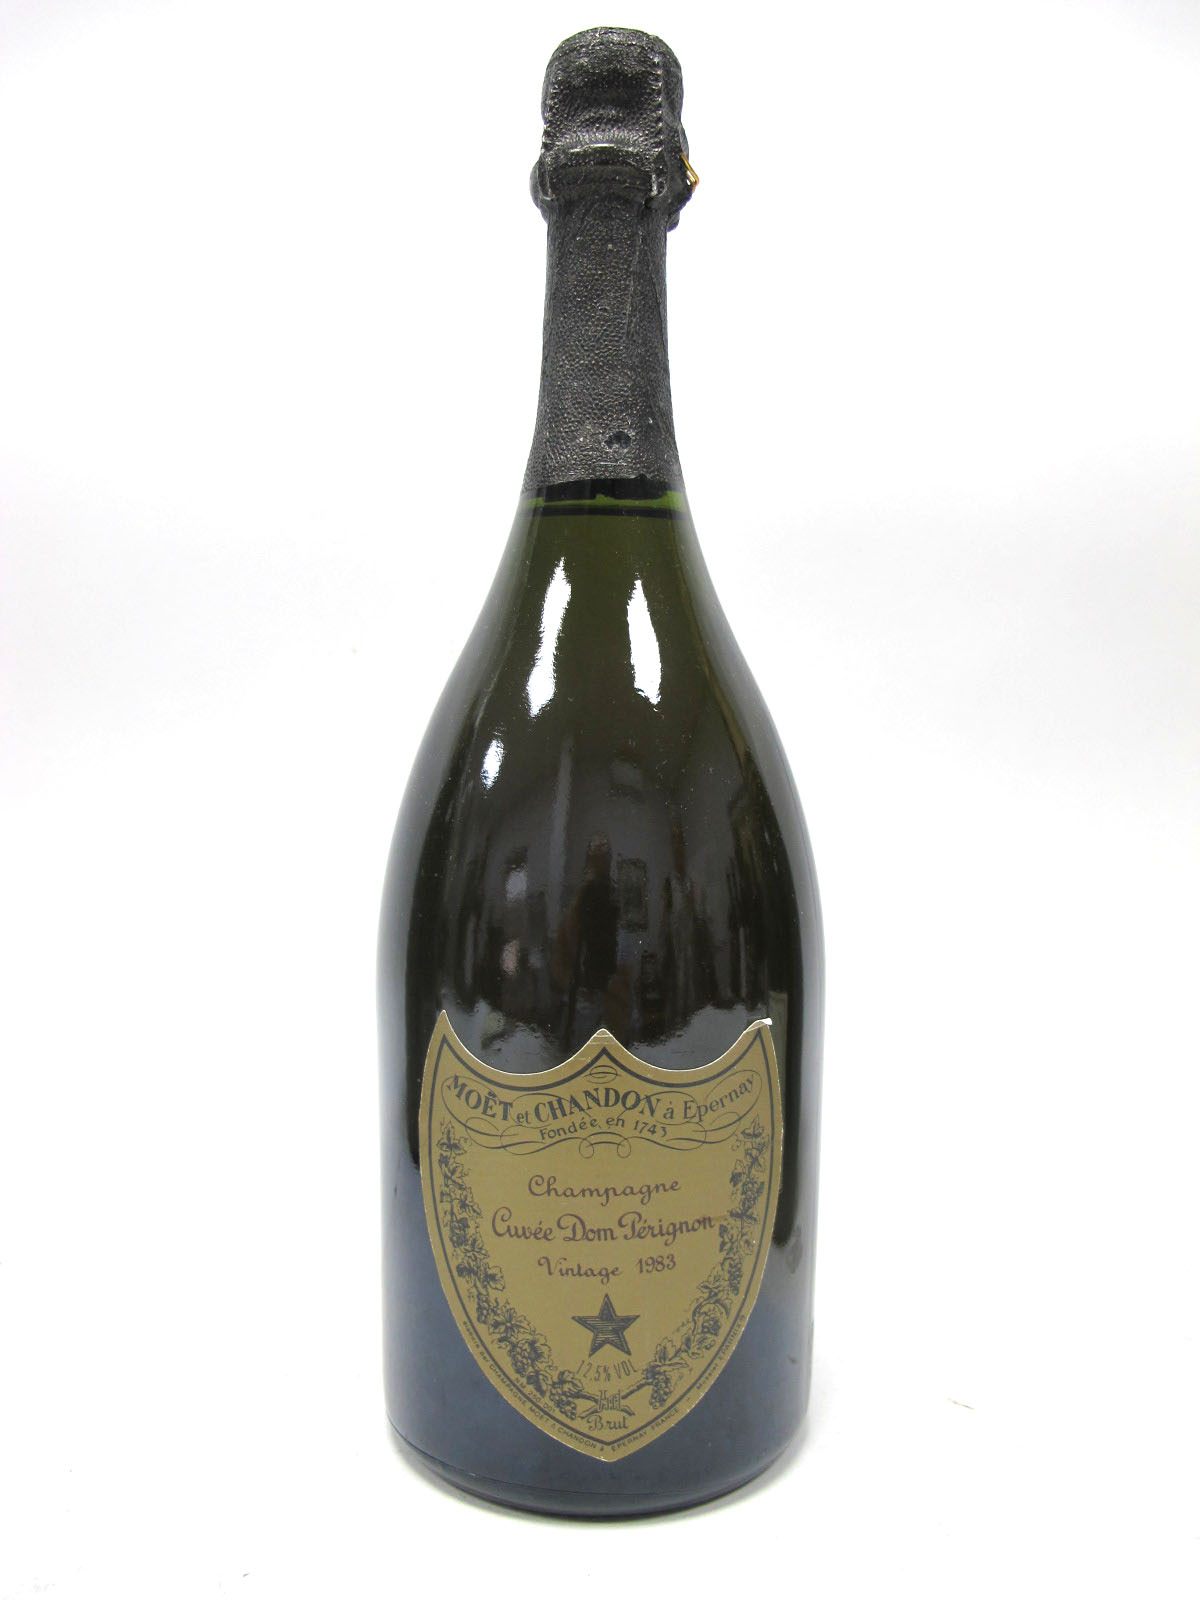 Champagne - Moet & Chandon Cuvee Dom Perignon Champagne Vintage 1983, 75cl, 12.5% Vol.